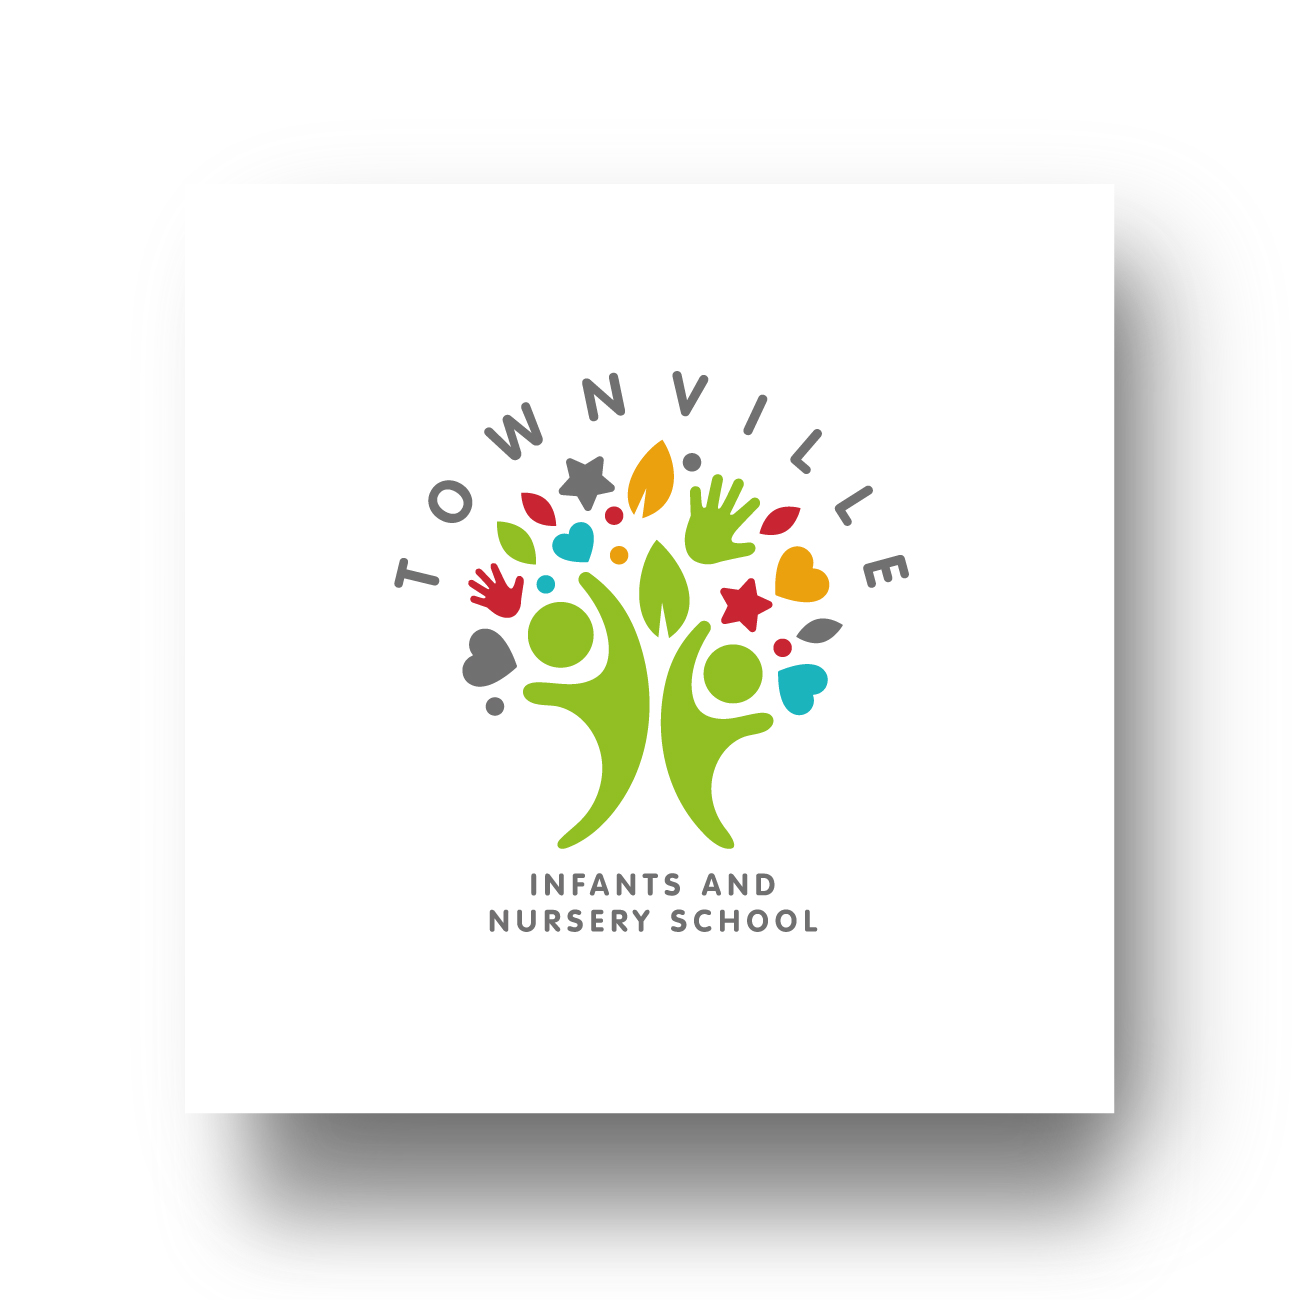 Townville Infants & Nursery School logo